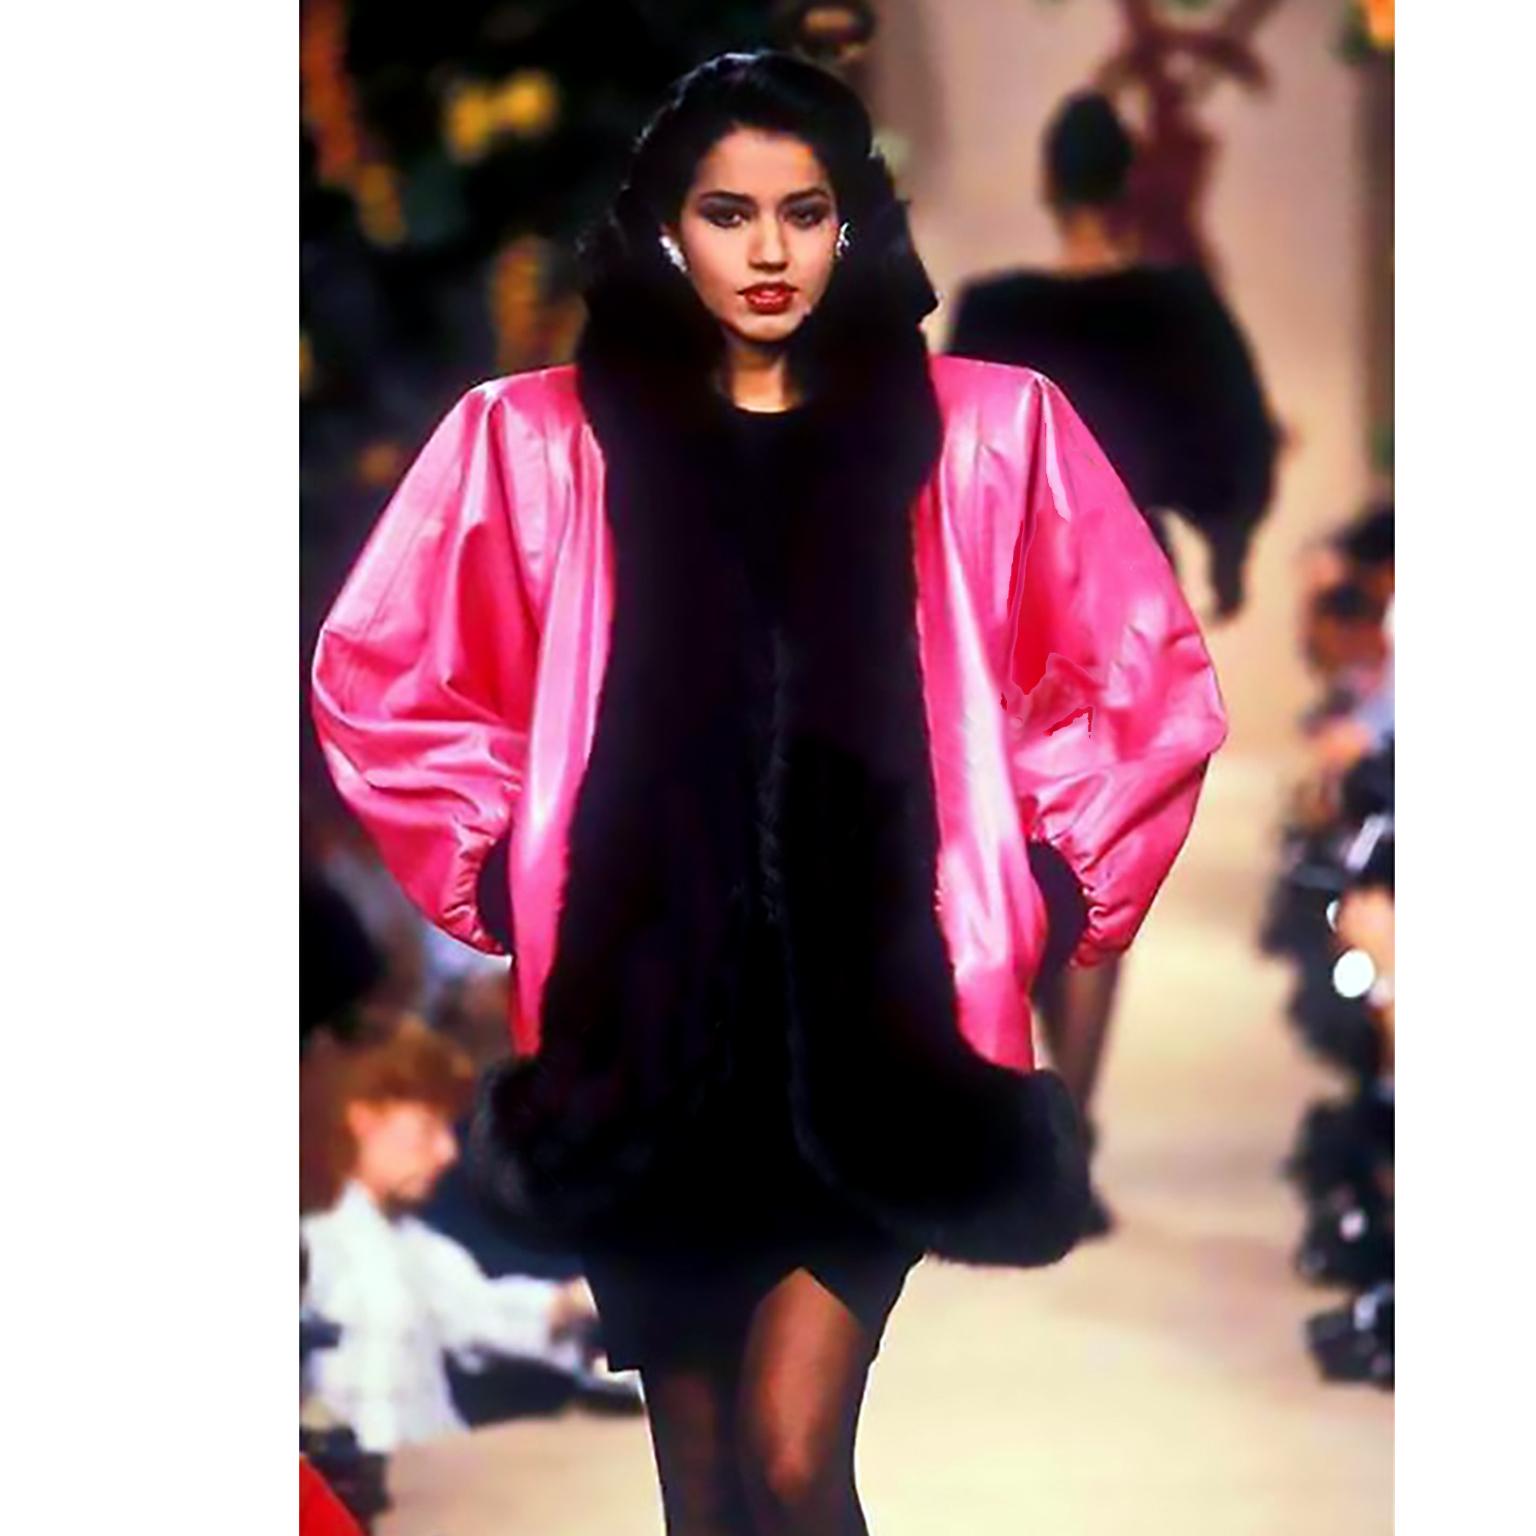 Dies ist eine unglaubliche Yves Saint Laurent Vintage Haute Couture 1987 rosa Lederjacke mit gefärbten schwarzen Fuchspelz trimmen. Dieser Mantel war auf dem Laufsteg der YSL Haute Couture 1987/88 zu sehen und ist ein seltenes Stück Modegeschichte,